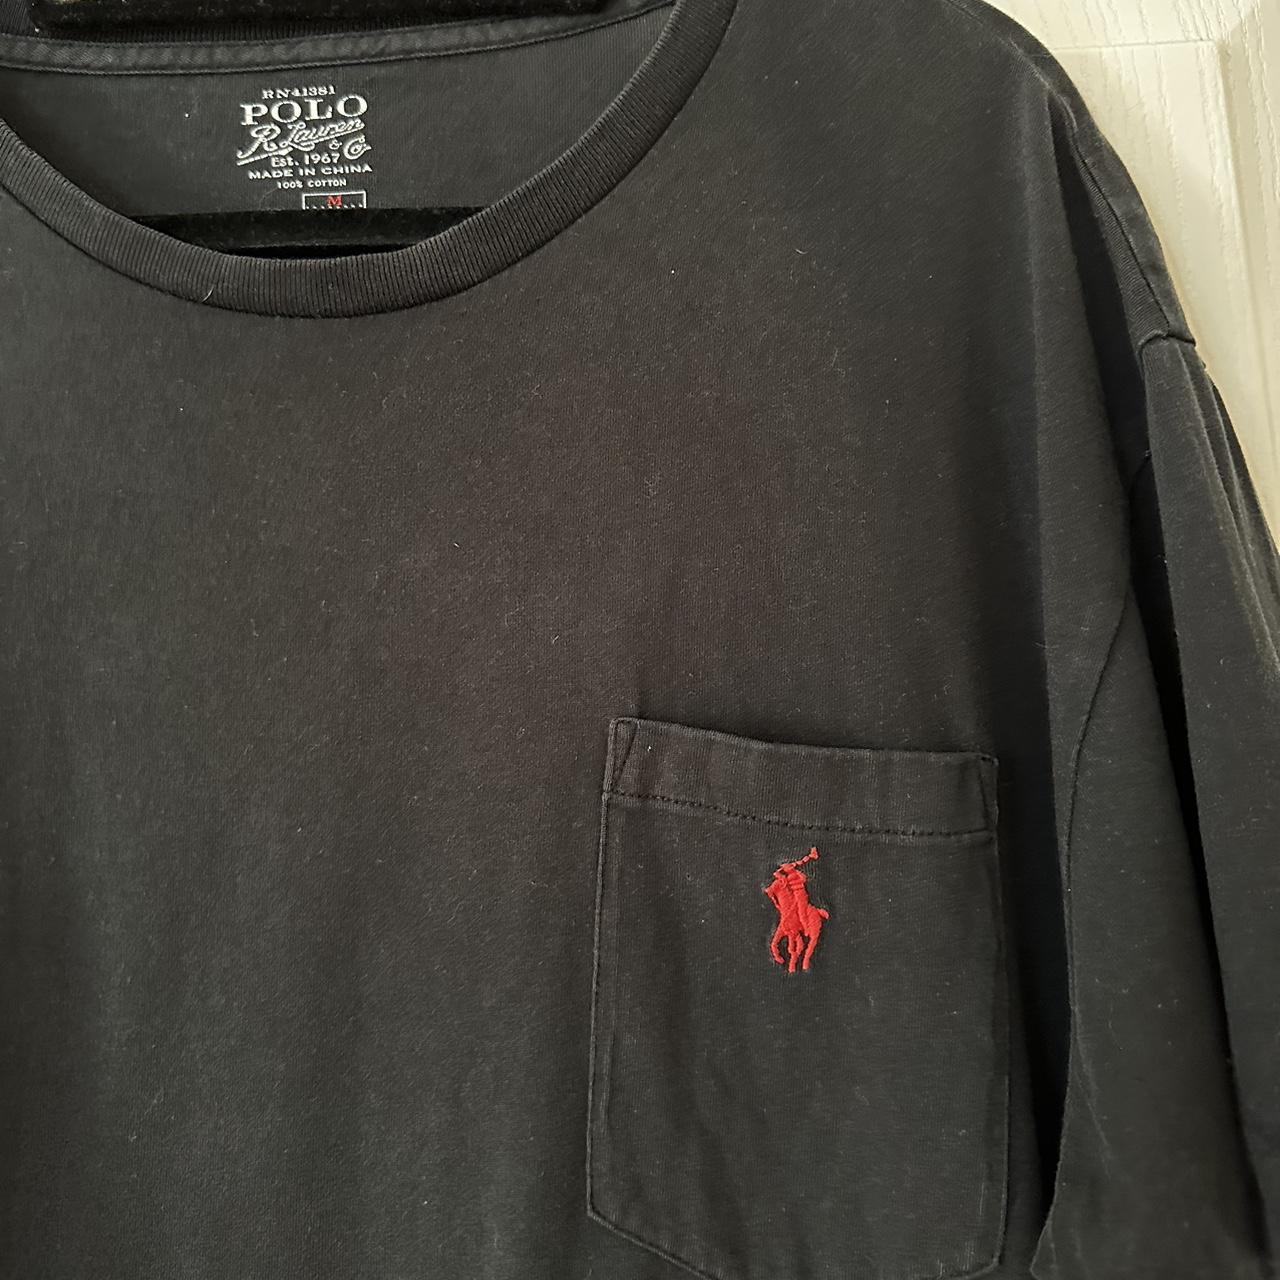 Ralph Lauren T-Shirt with pocket - Depop